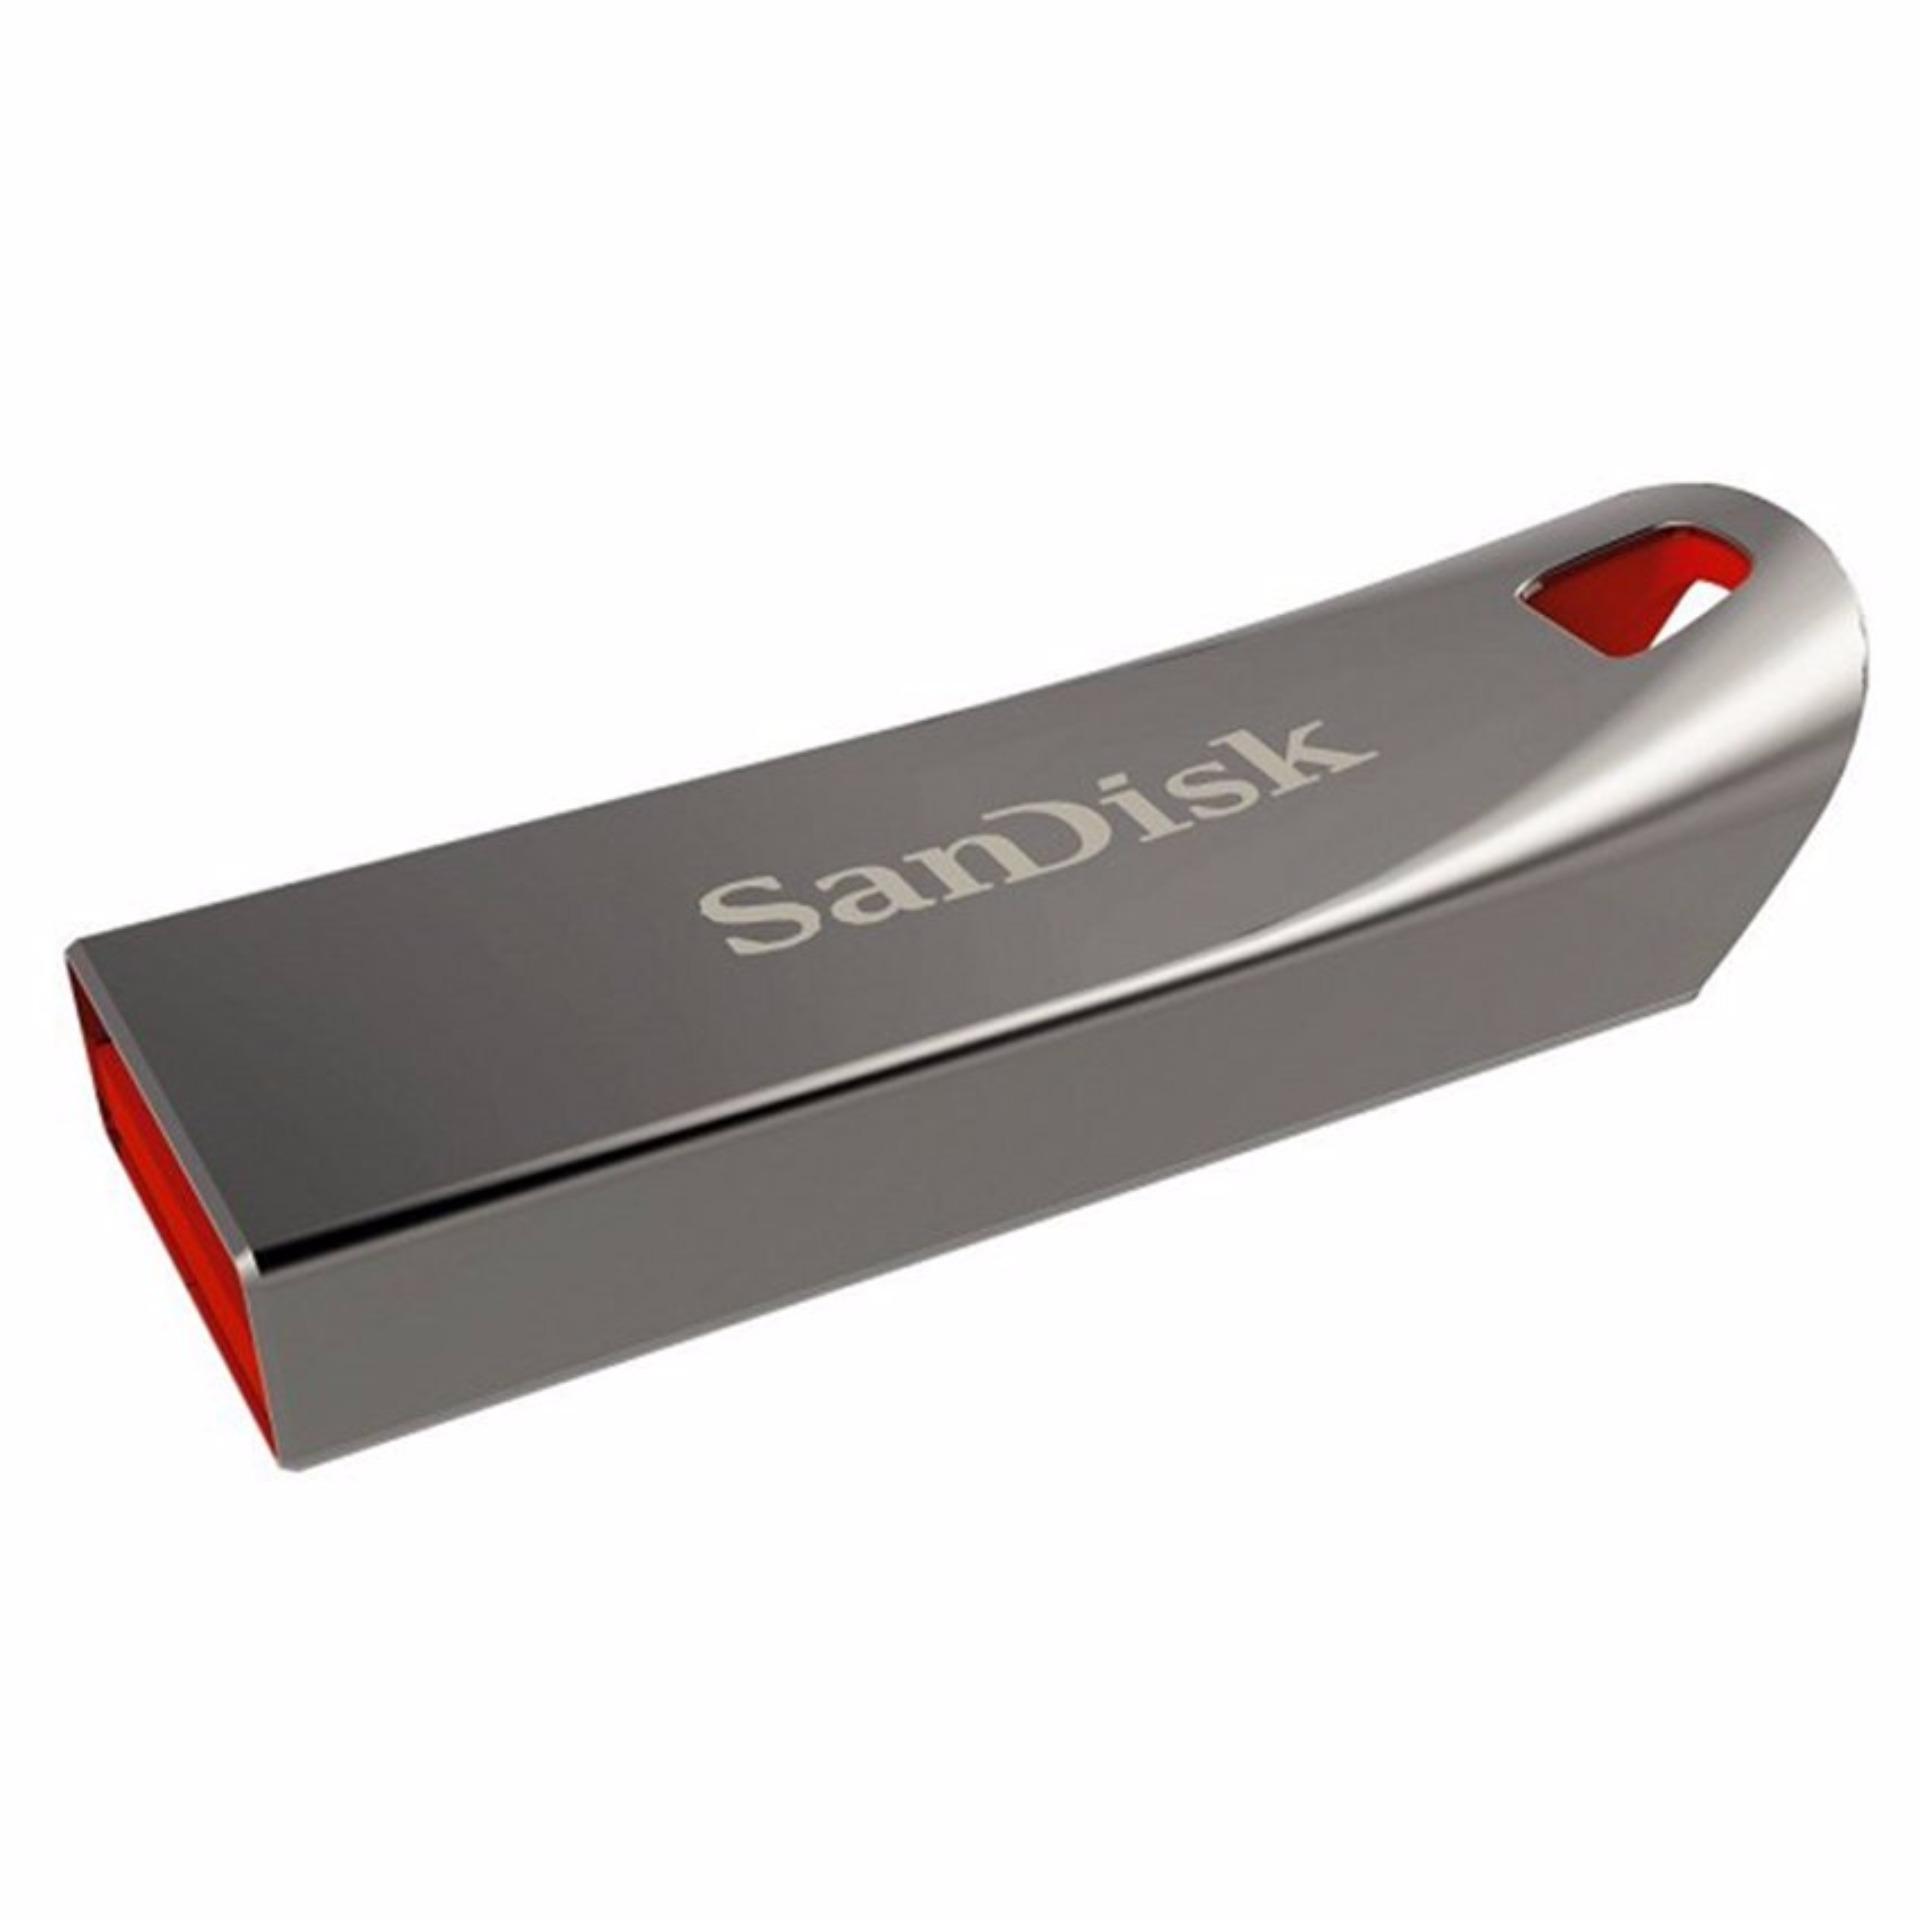 USB SanDisk Cruzer CZ71 16GB (Bạc) - Hãng phân phối chính thức